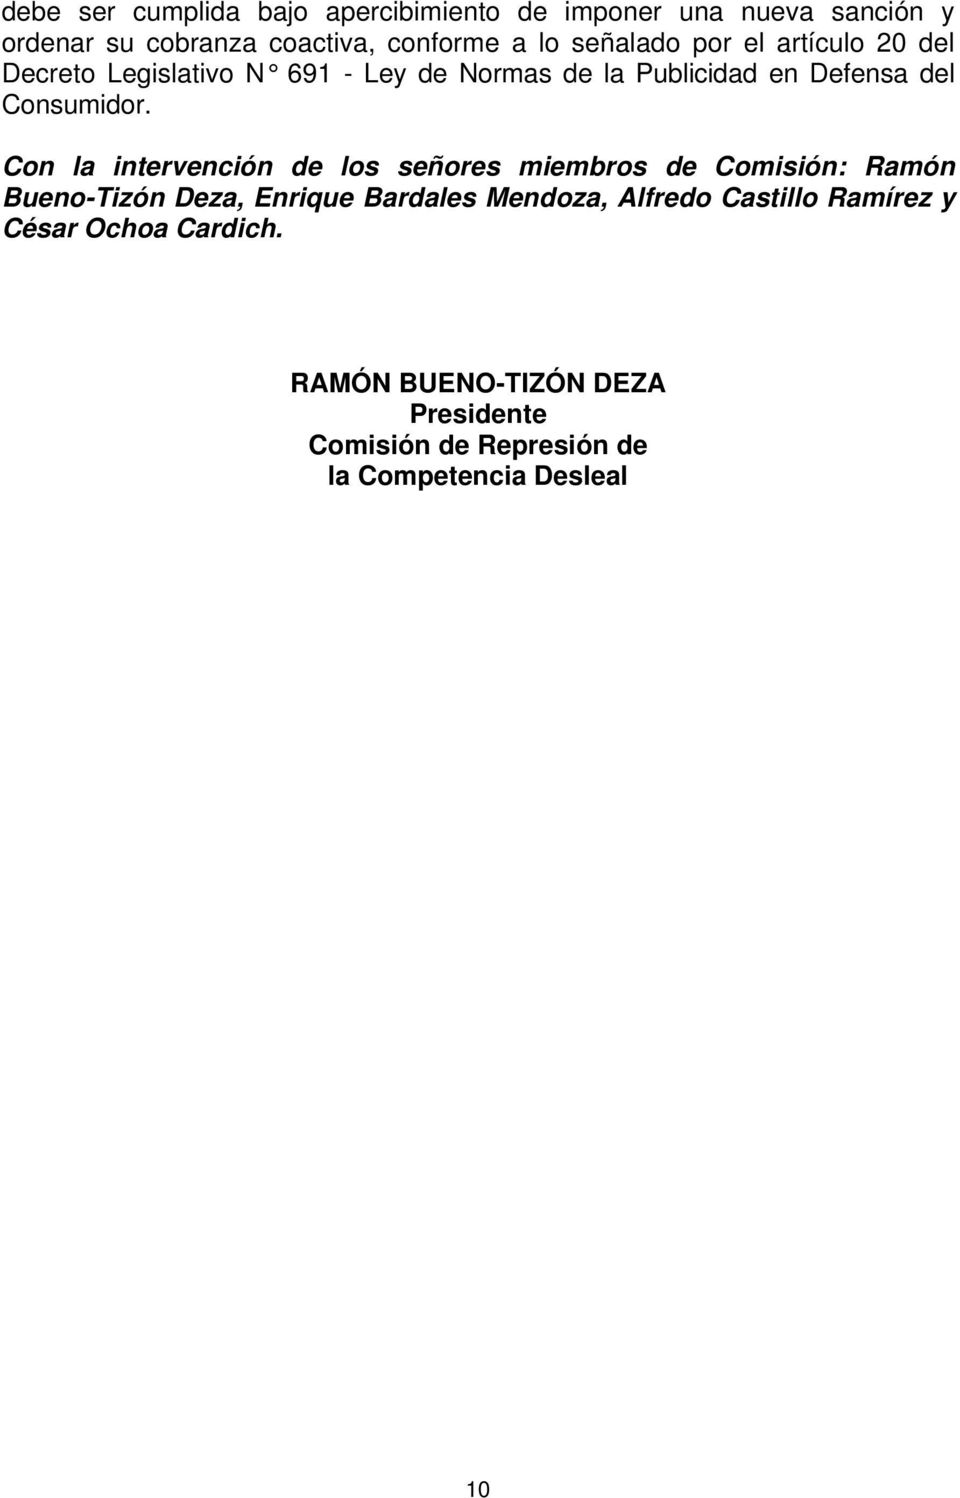 Con la intervención de los señores miembros de Comisión: Ramón Bueno-Tizón Deza, Enrique Bardales Mendoza, Alfredo